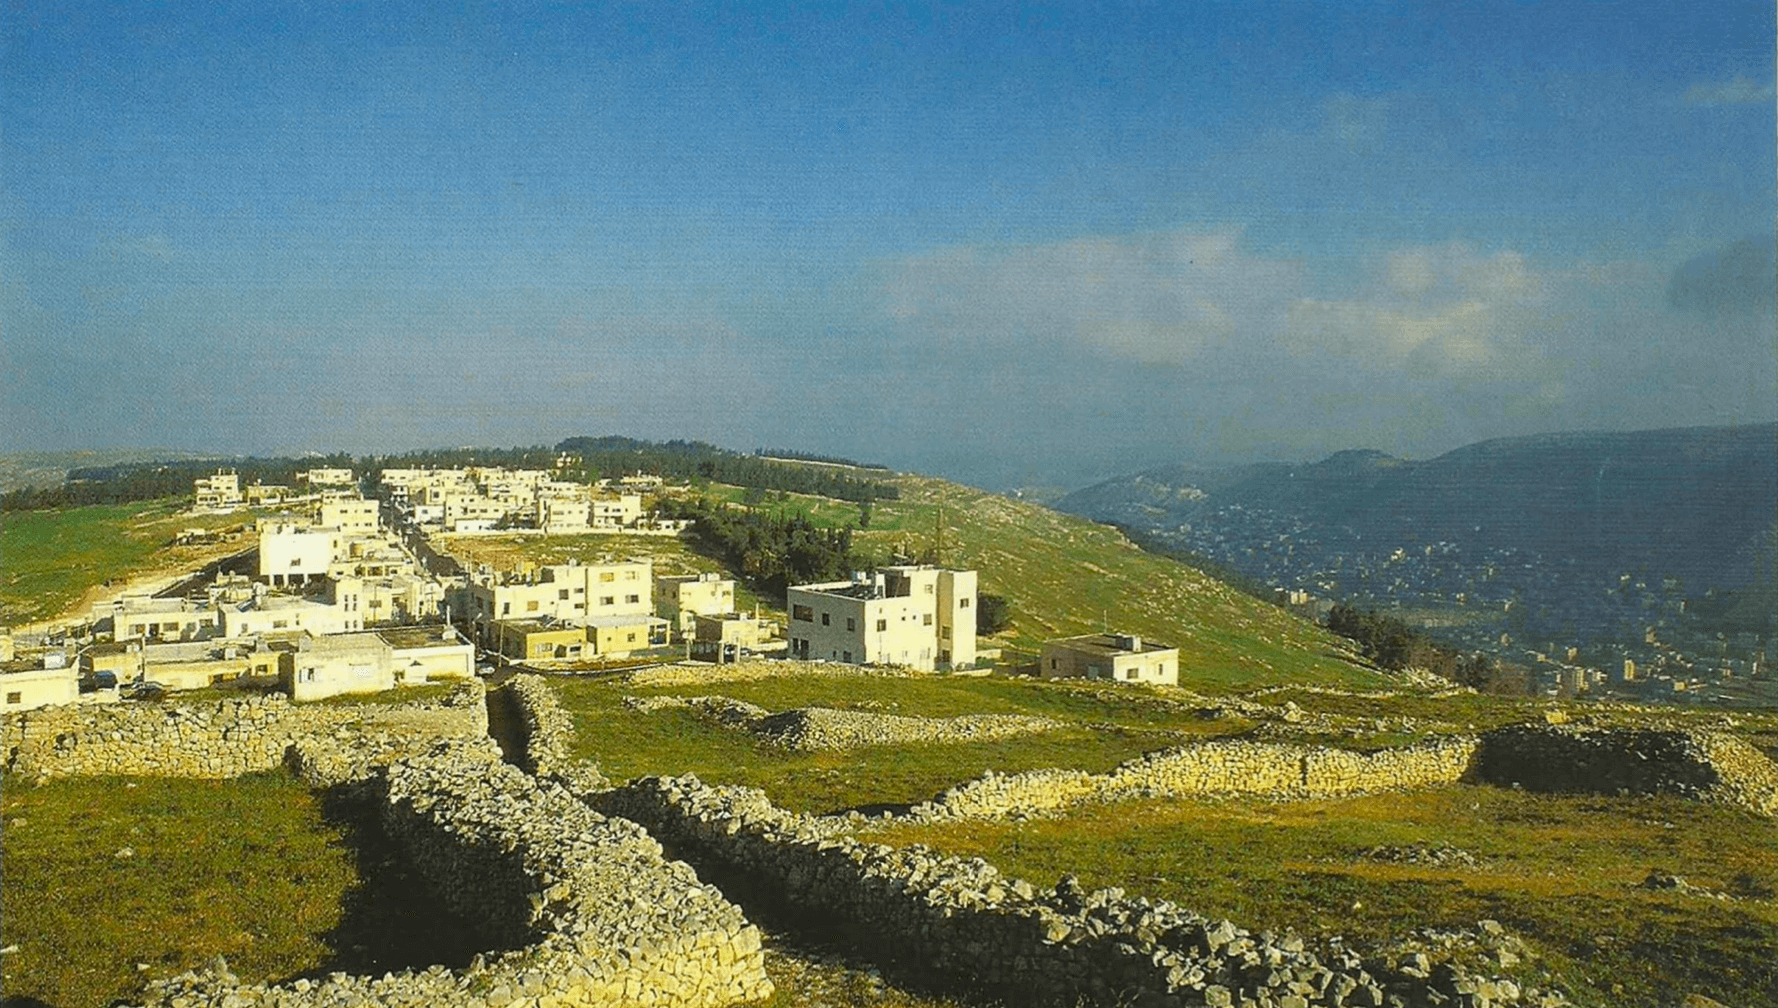 Neve Kedem - uma vila samaritana no monte Gerizim. Monte Ebal ao fundo. Séquem (atual Nablus) fica no vale, entre os dois montes.